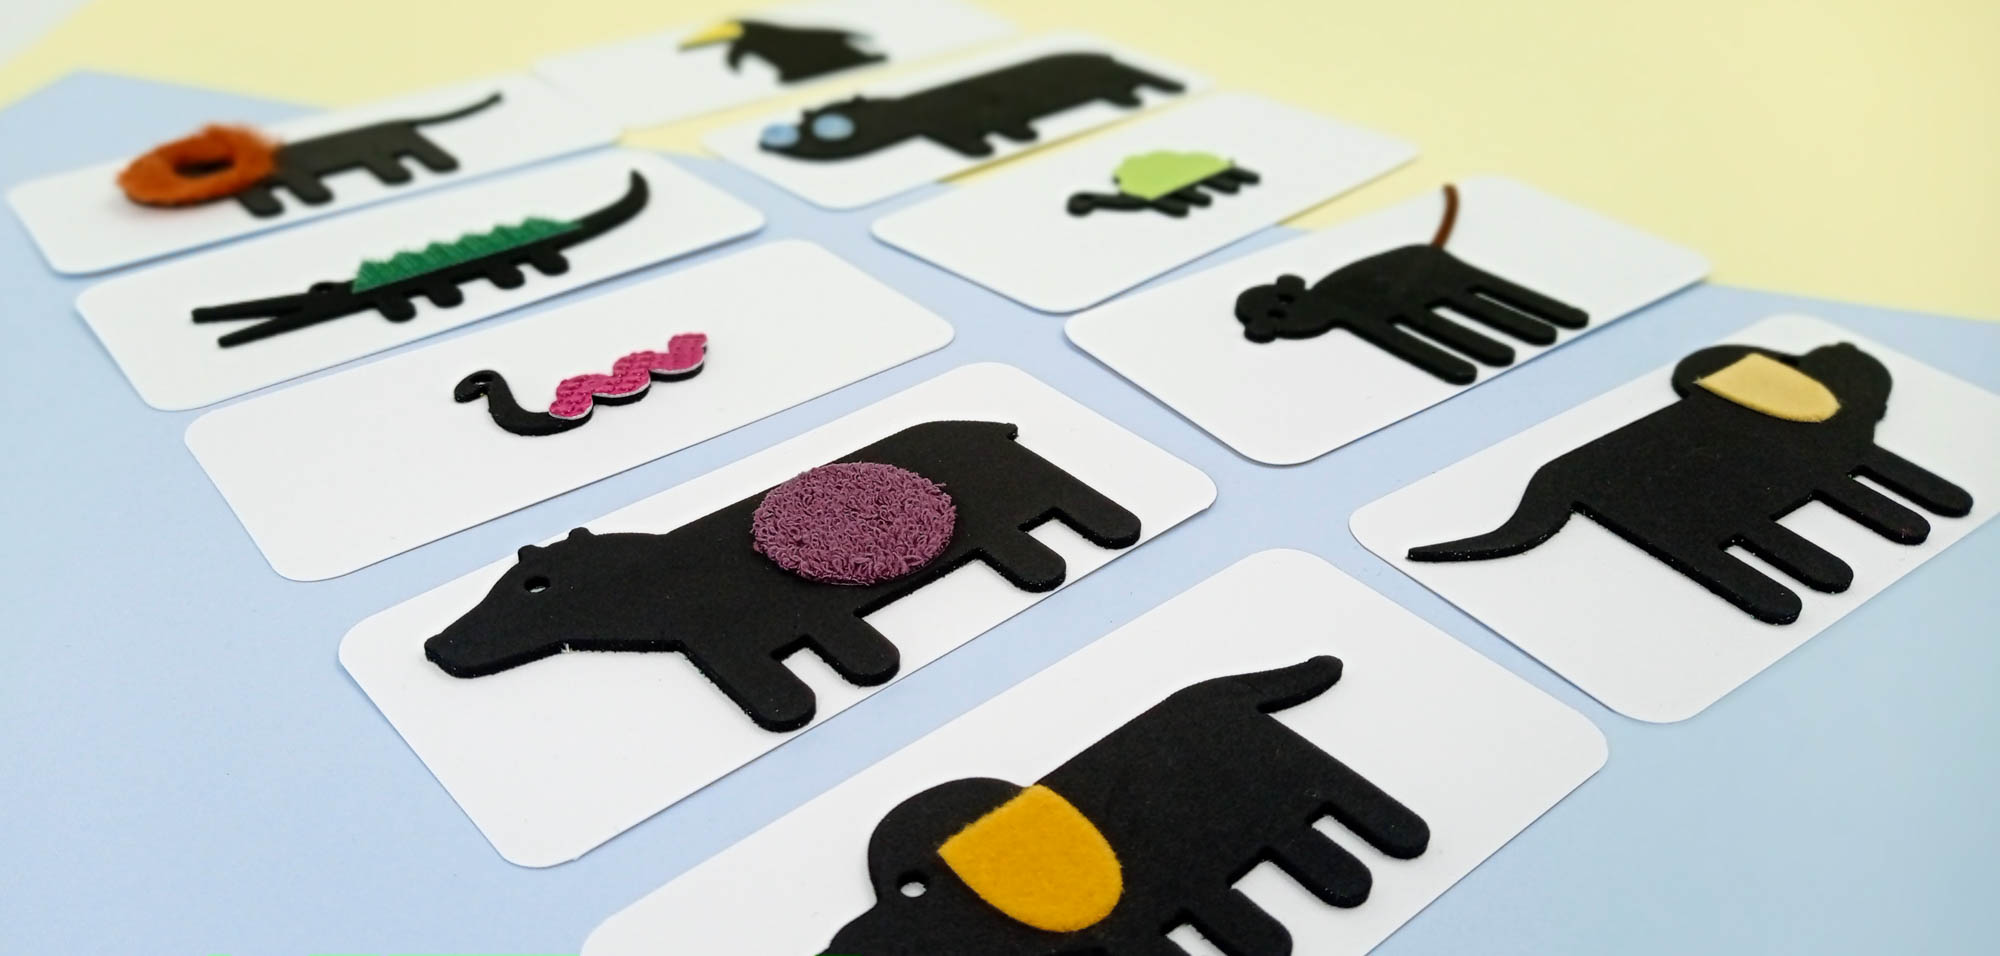 10 cartes avec au recto les 10 animaux en silhouette de profil en mousse noire épaisse et chacun un attribut tactile différent